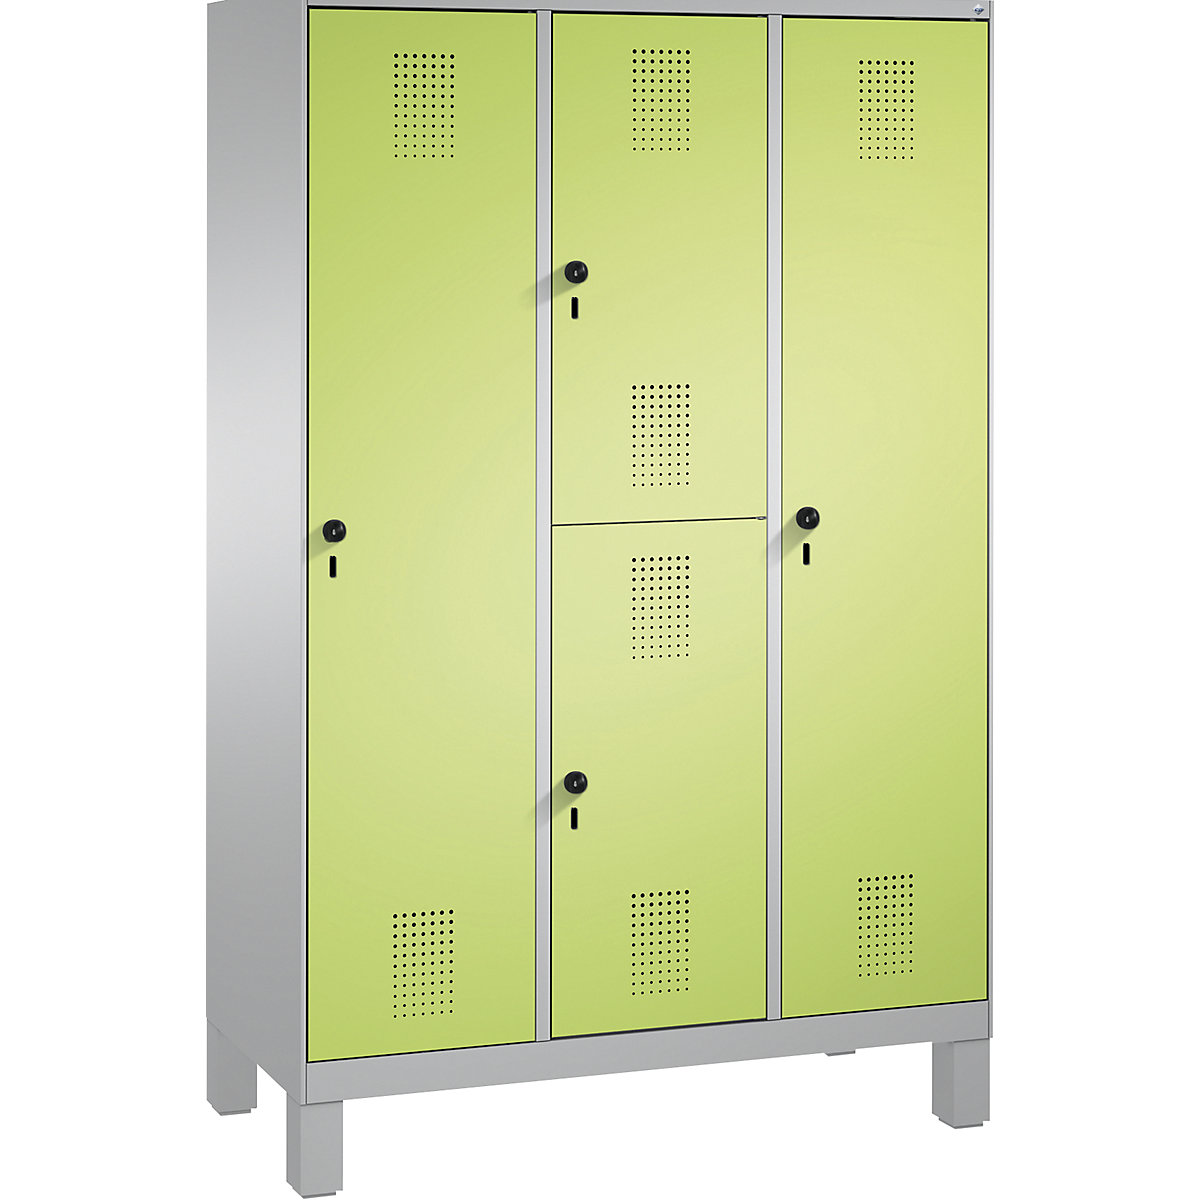 Kombinovaná skříň EVOLO, jednopatrová a dvoupatrová – C+P, 3 oddíly, 4 dveře, šířka oddílu 400 mm, s nohami, bílý hliník / viridianová zelená-13